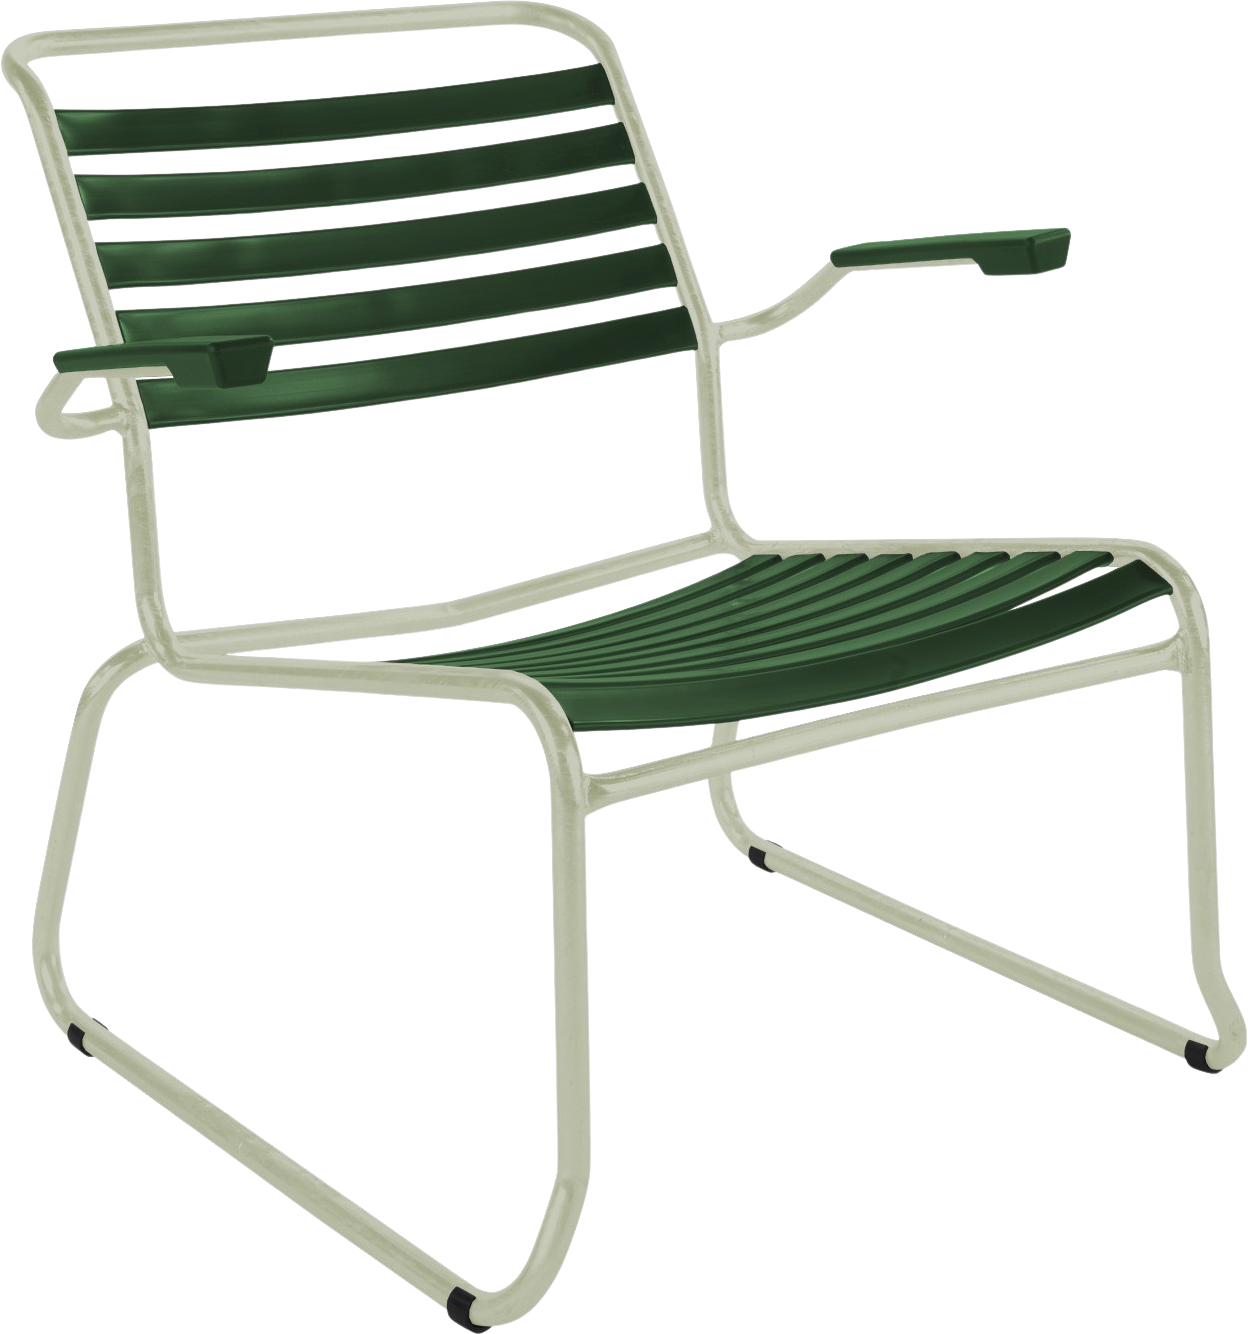 Säntis Kufen-Lounger Lättli mit Armlehne in Tannengrün / Pastellgrün präsentiert im Onlineshop von KAQTU Design AG. Outdoor-Sessel ist von Schaffner